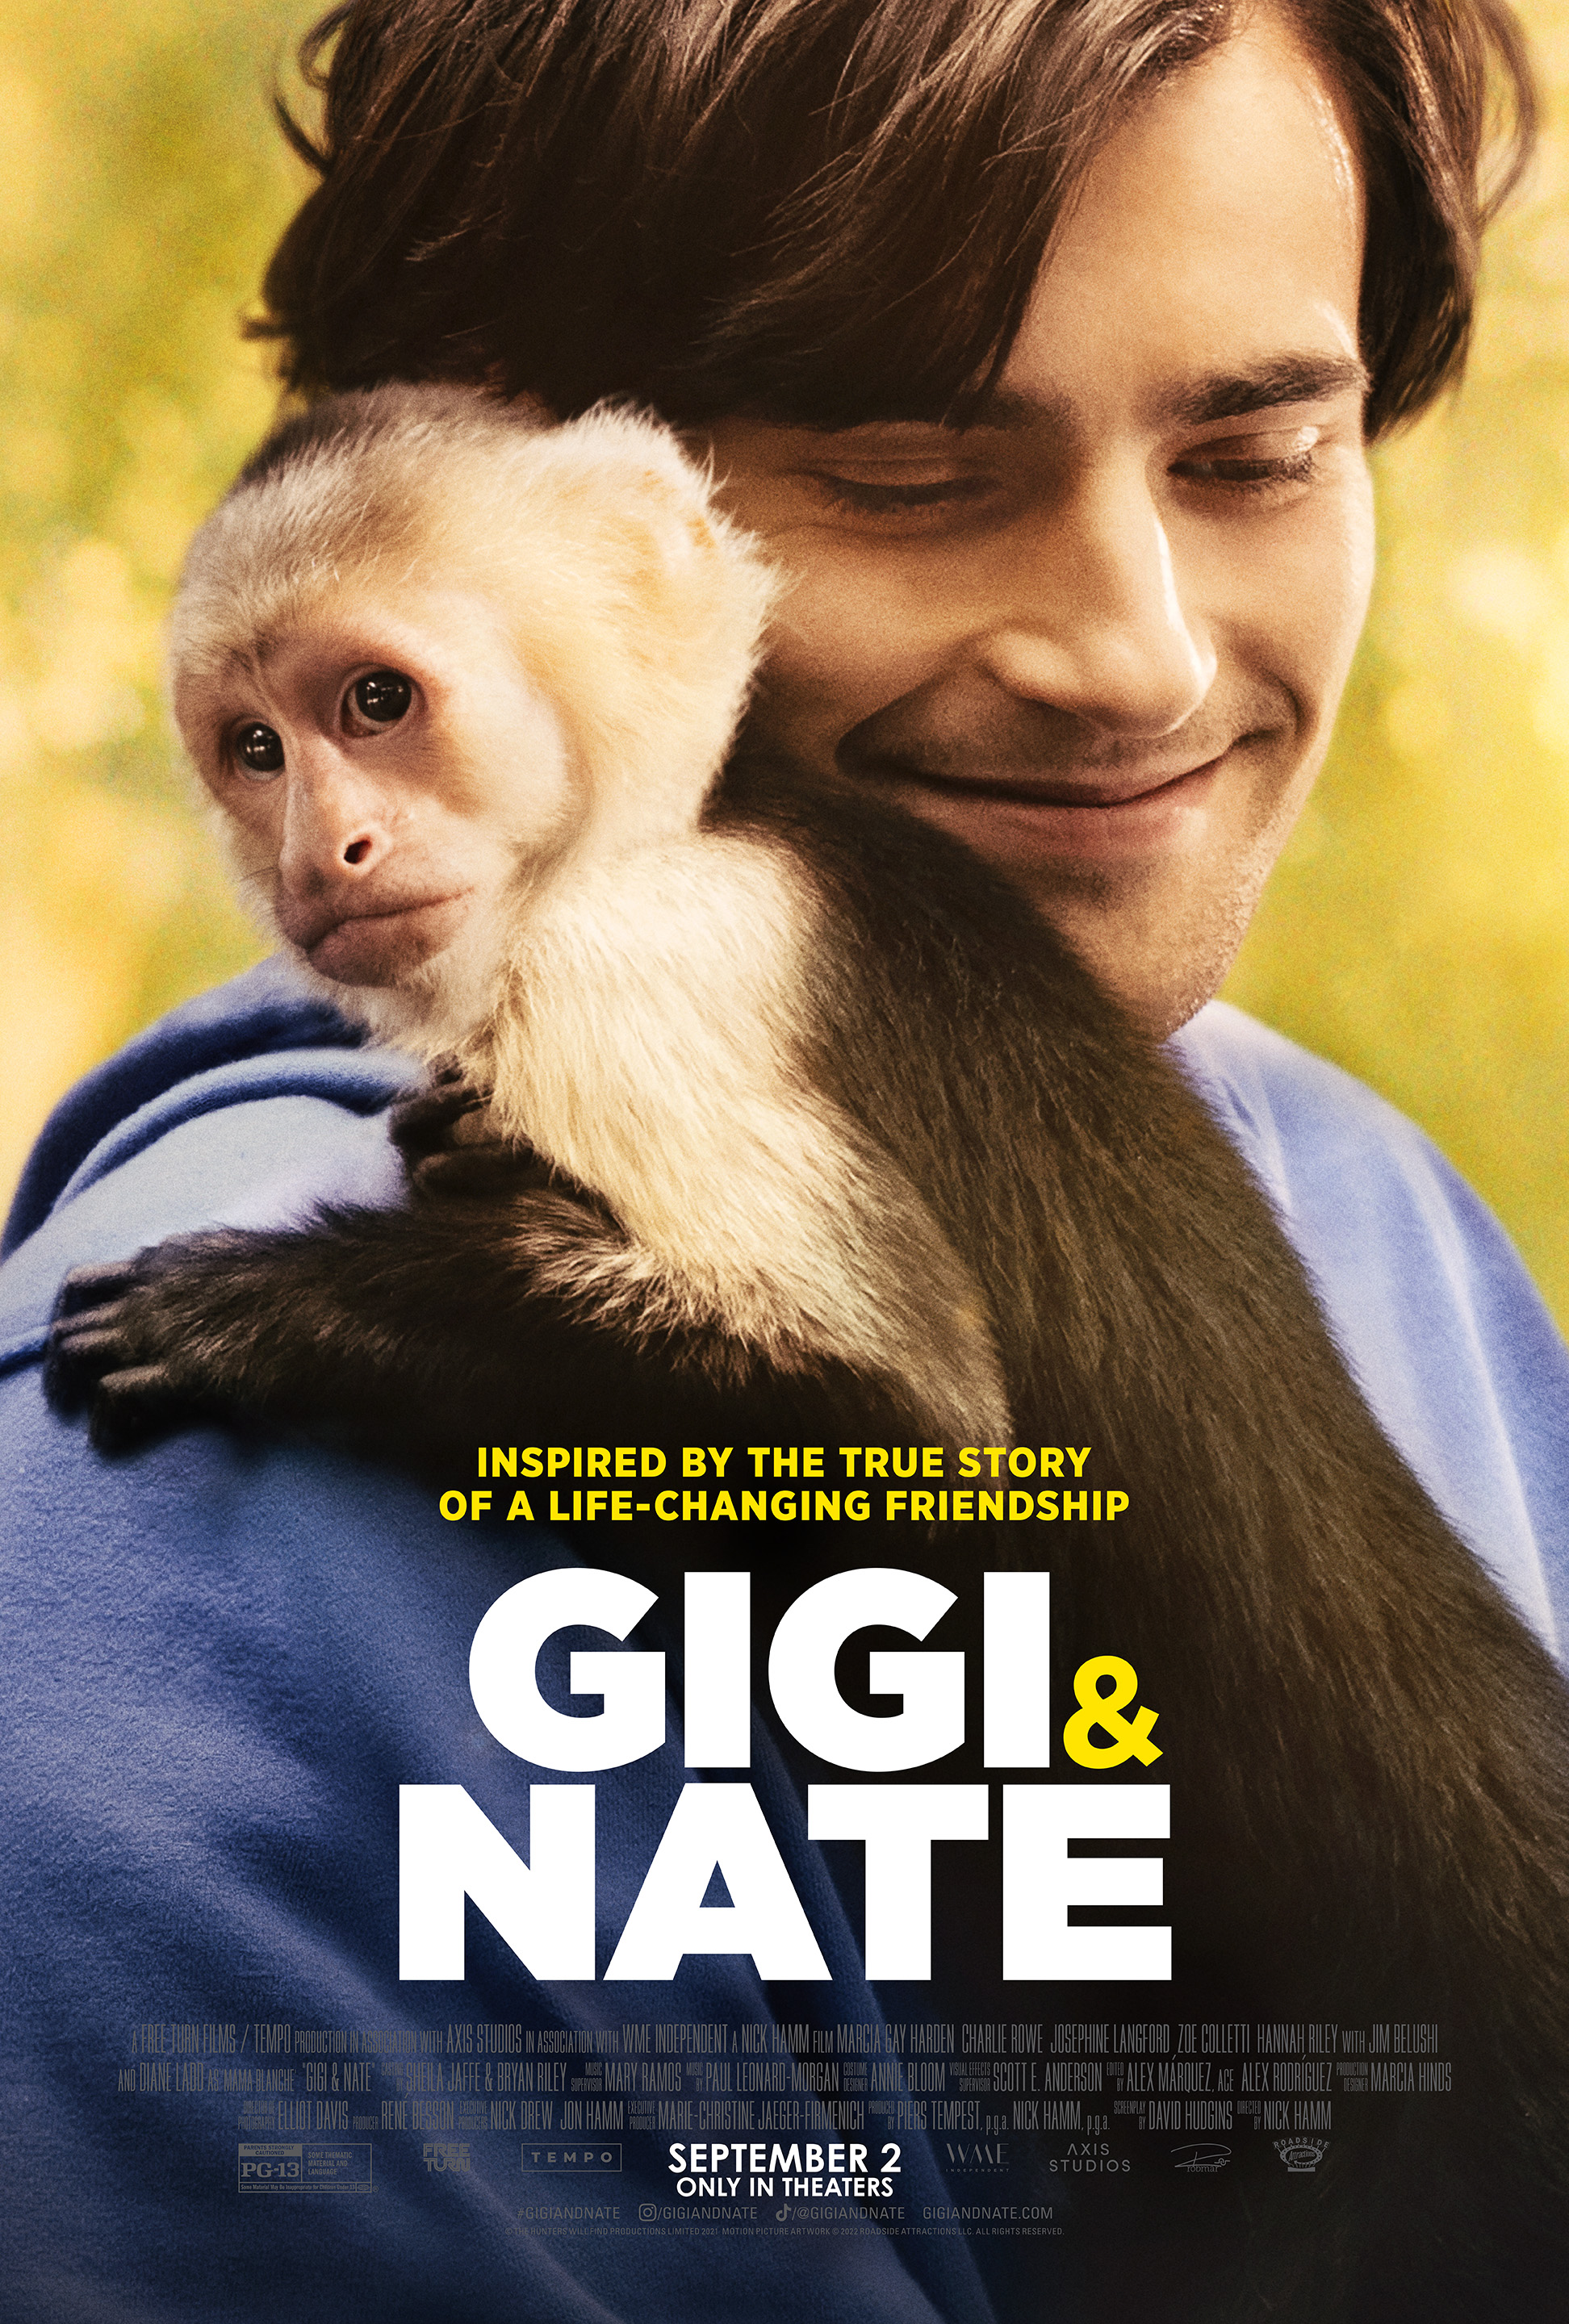 Cover Art for "Gigi & Nate"